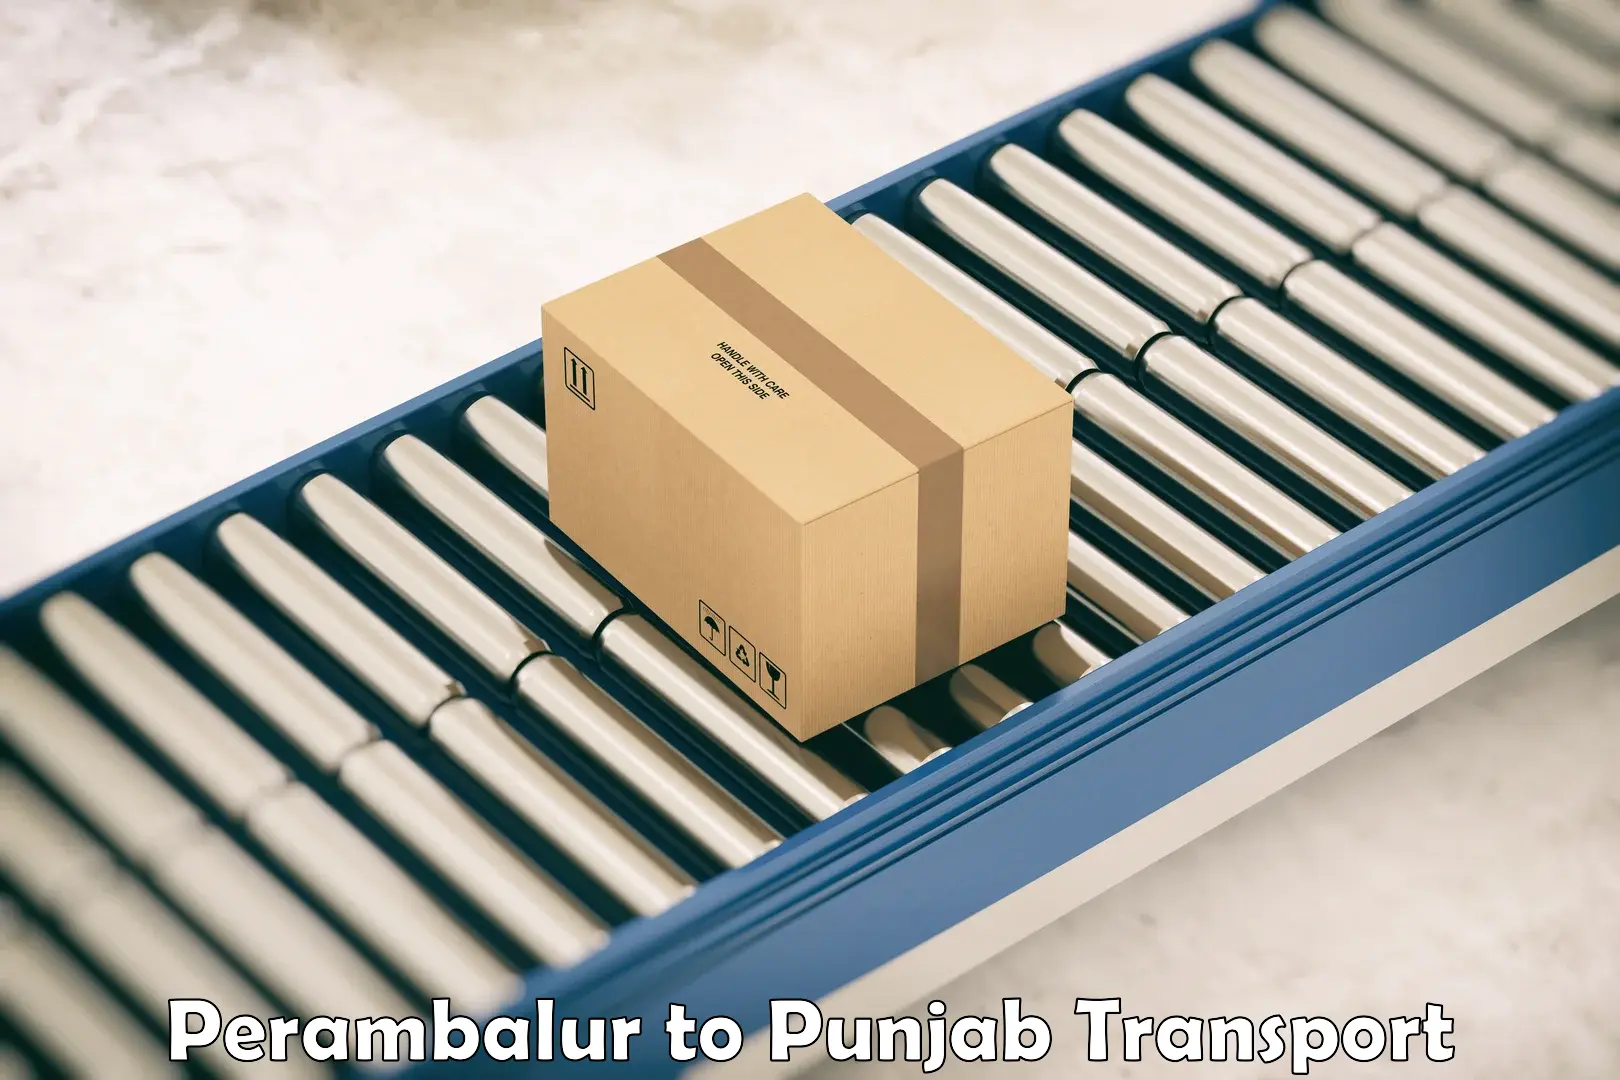 International cargo transportation services Perambalur to Punjab